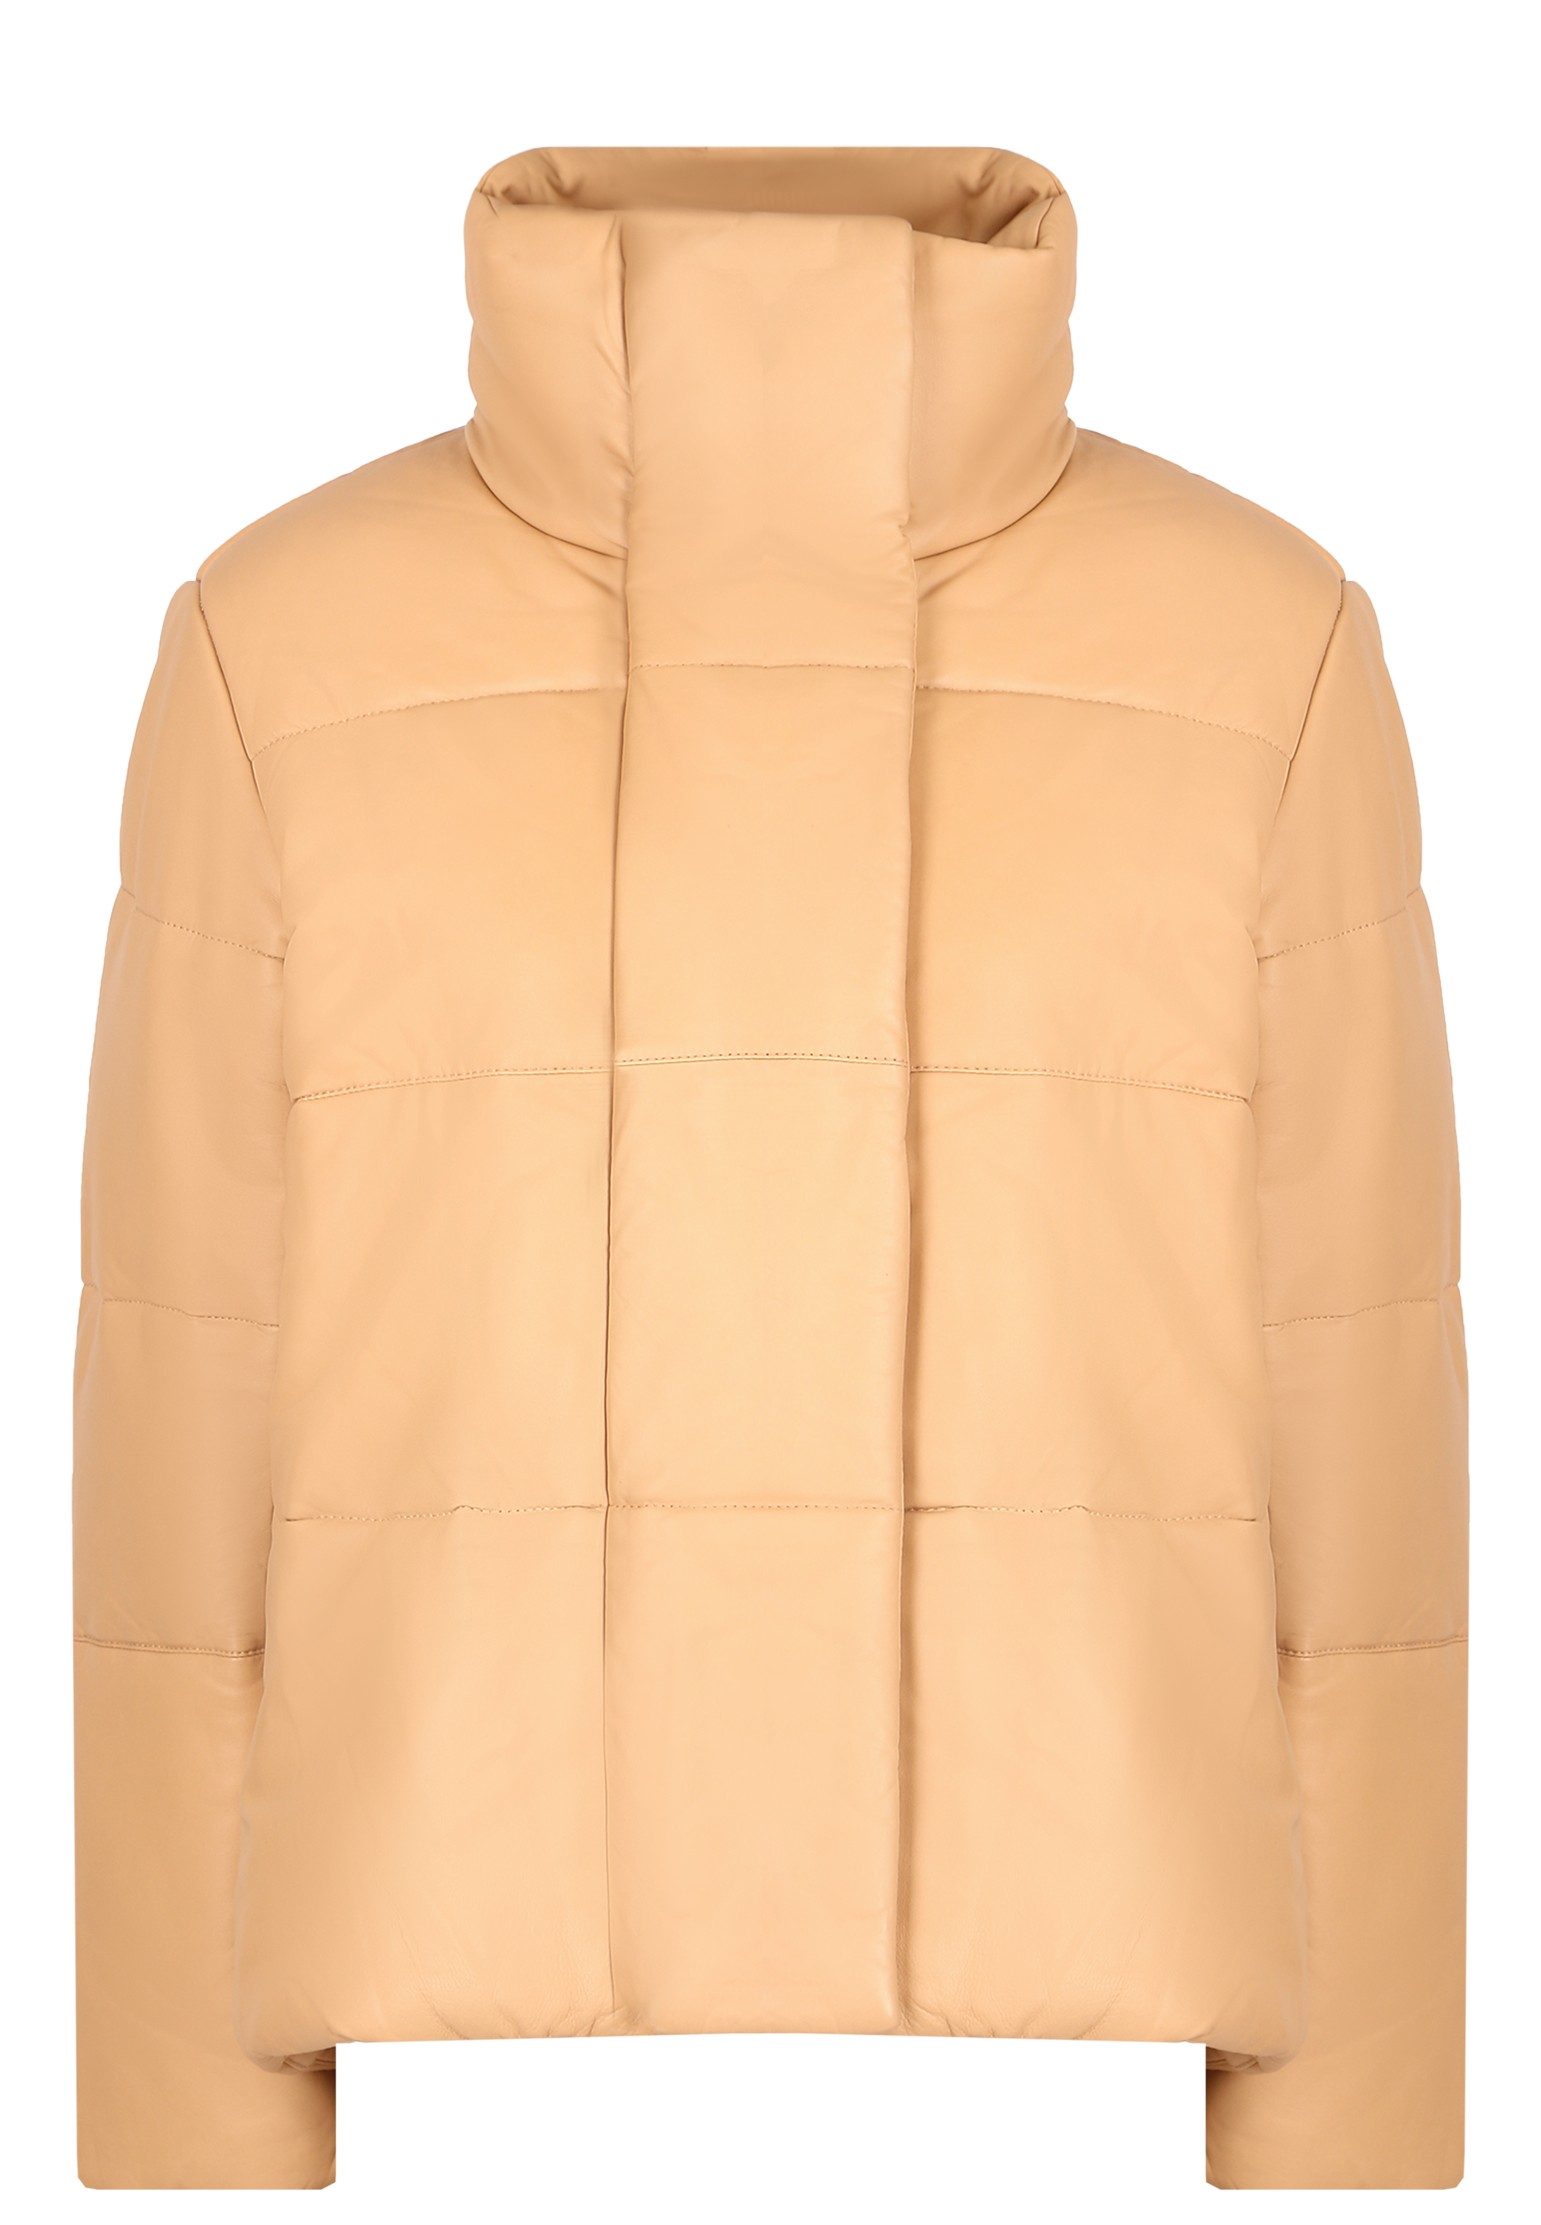 Кожаная куртка женская MAX & MOI 134892 коричневая 38 FR